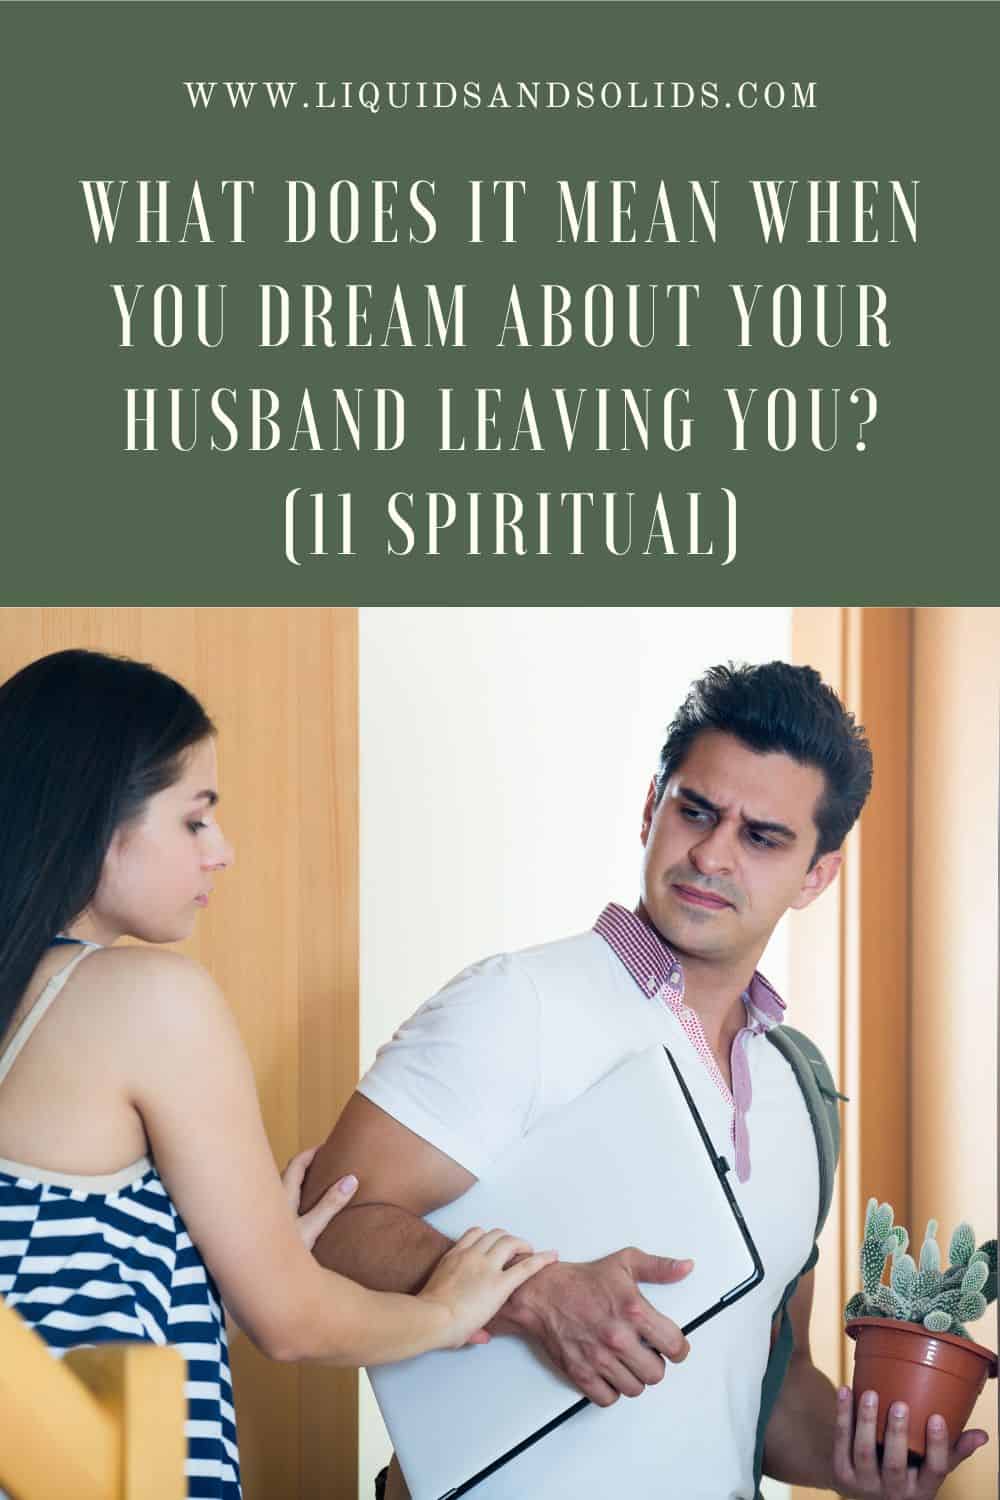  Rêve de votre mari qui vous quitte (11 significations spirituelles)